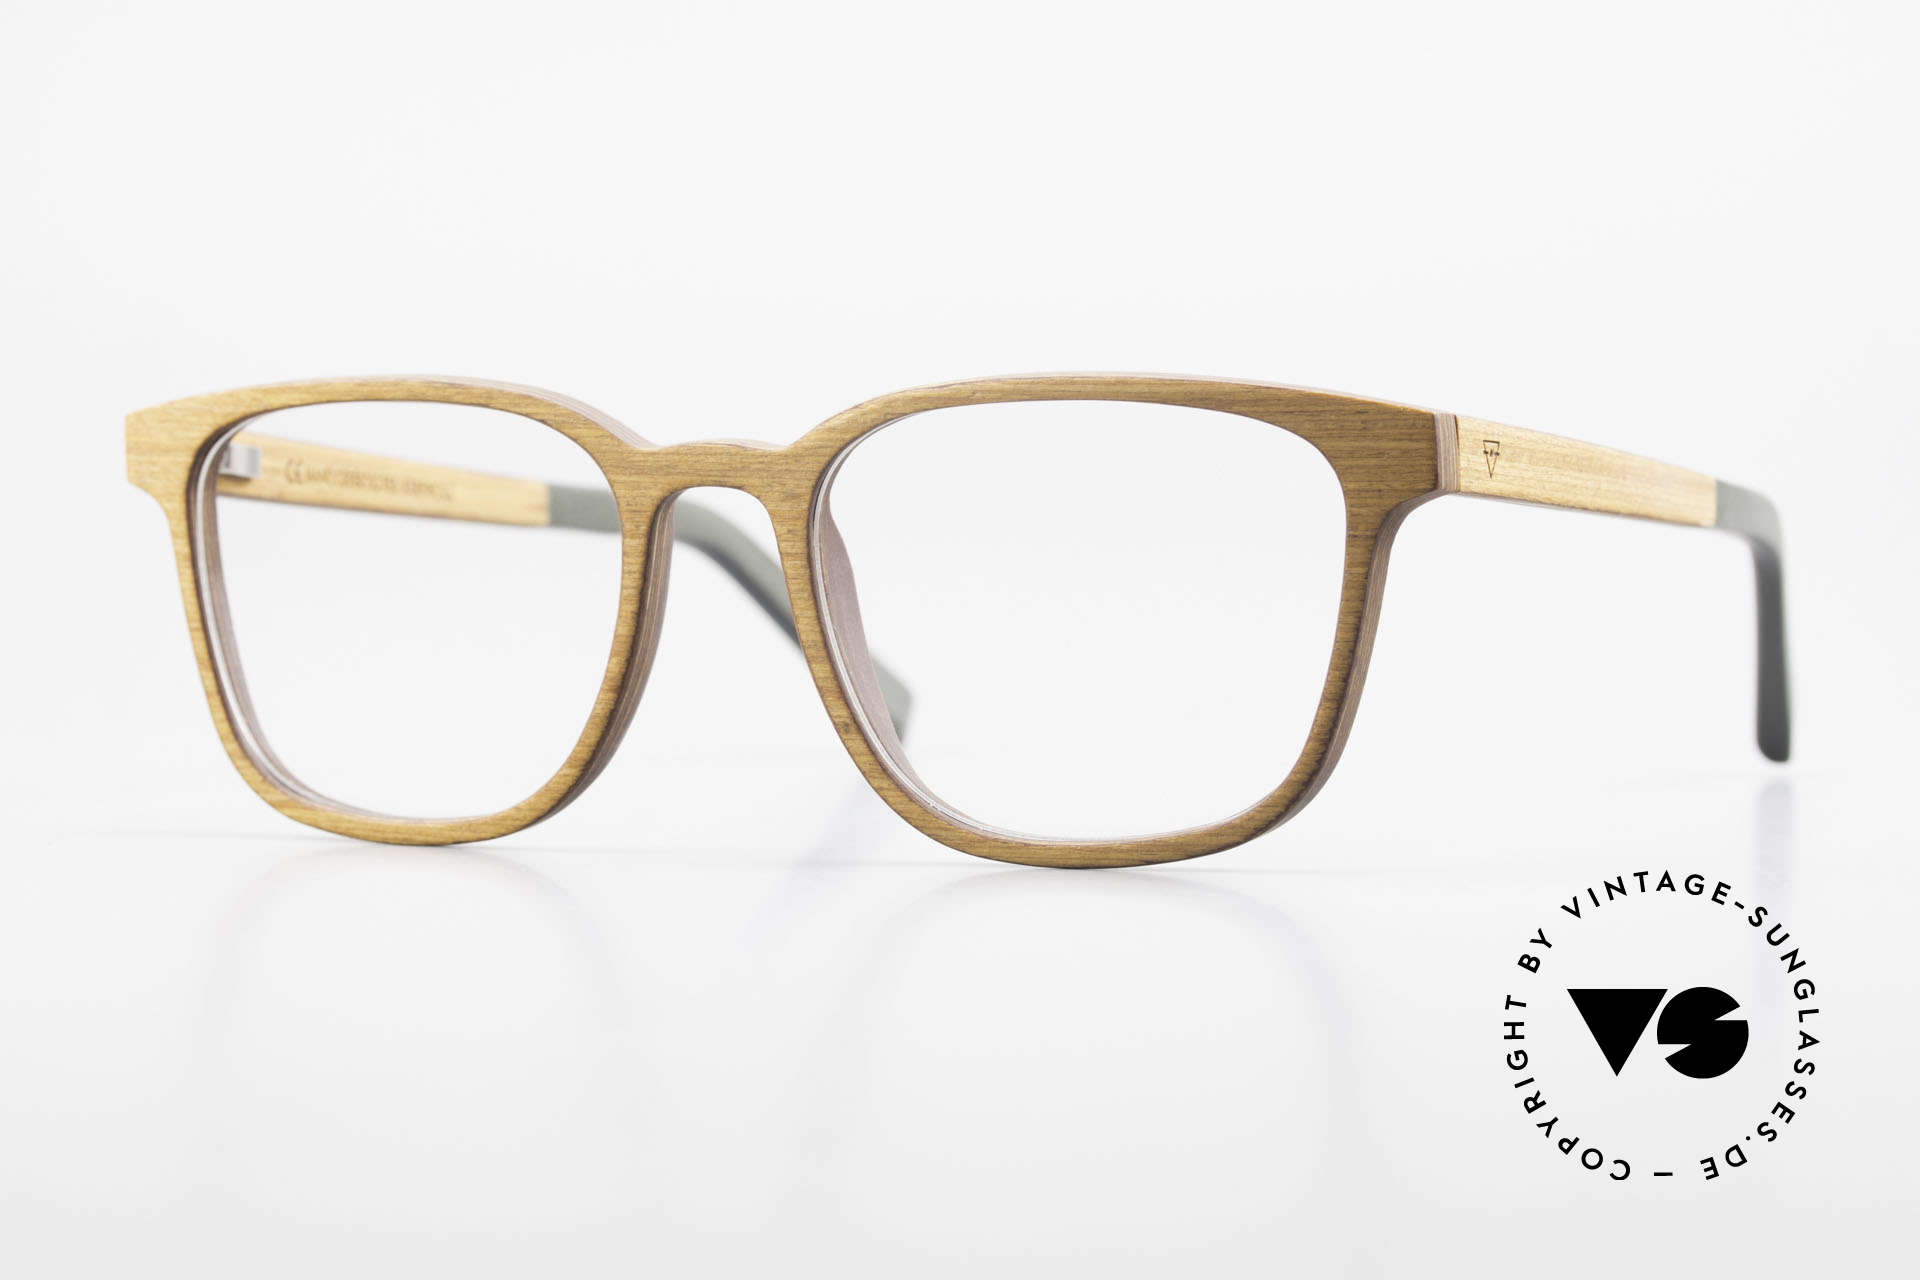 Kerbholz Ludwig Men's Wood Frame Alderwood, men's WOOD glasses by Kerbholz, made in Germany, Made for Men